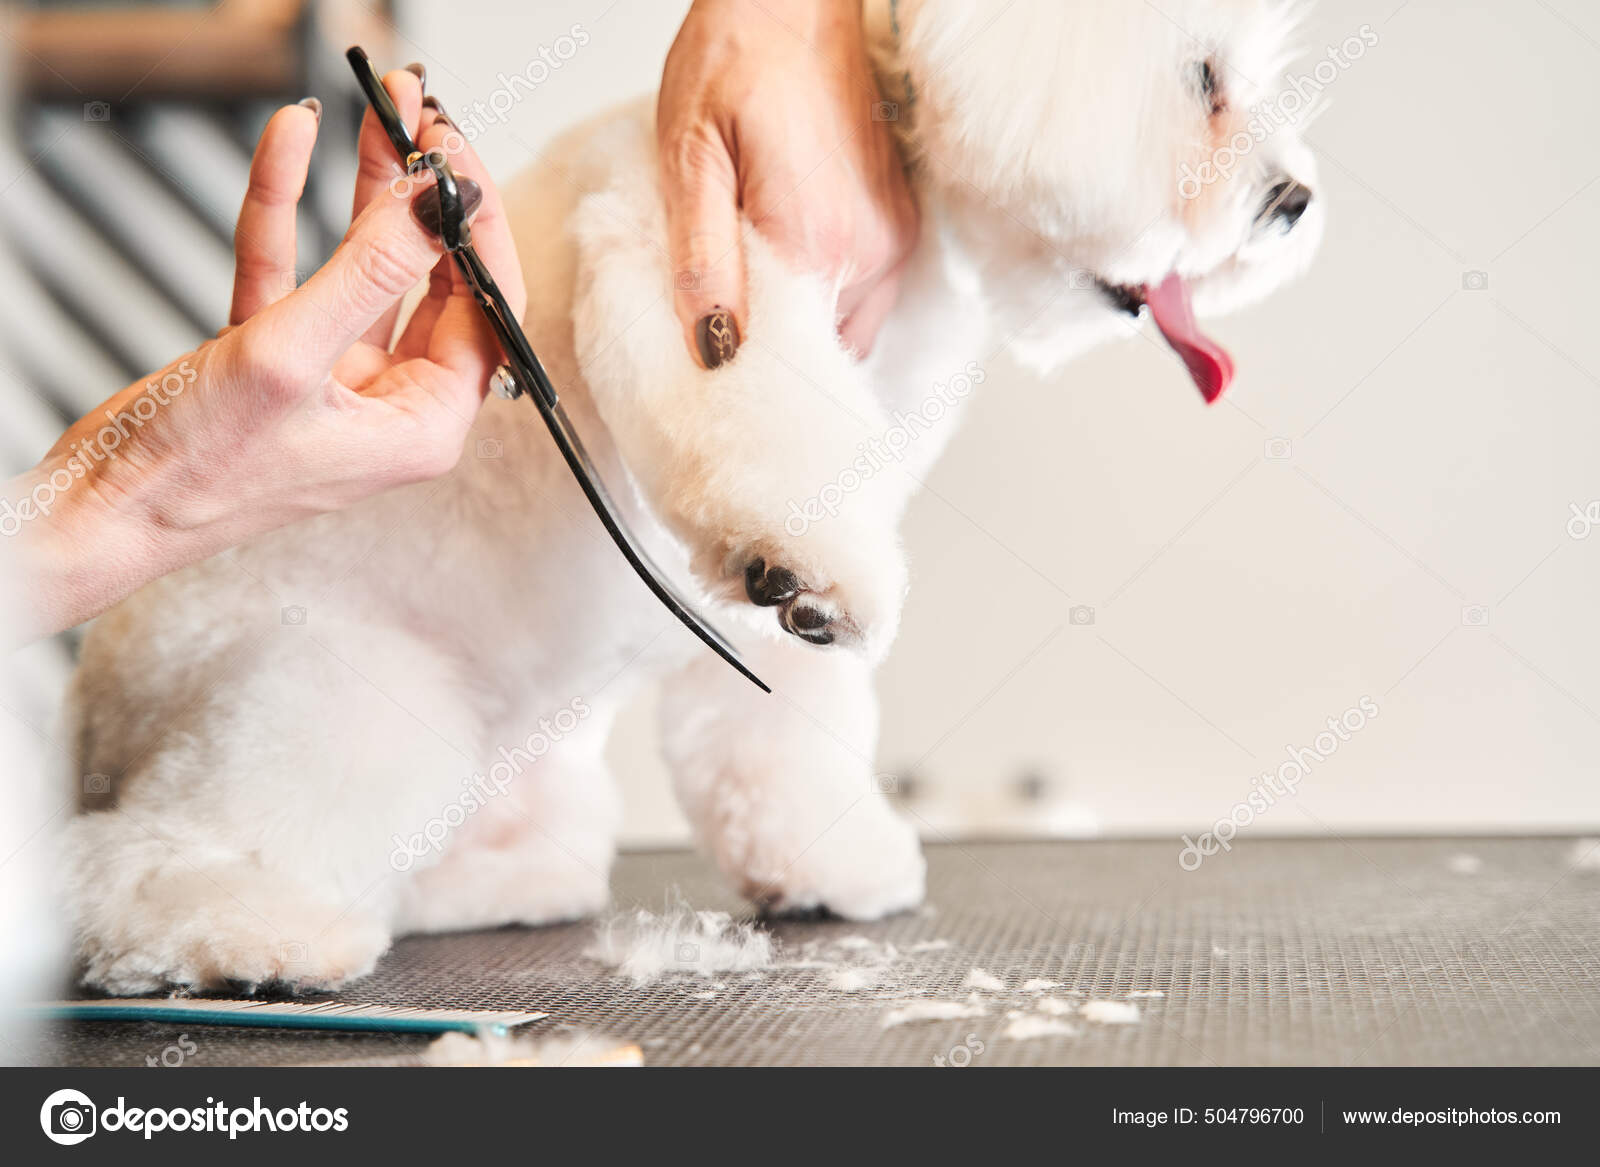 Peluquero femenino usando tijeras para cortar el pelo de los perros: fotografía de stock © #504796700 | Depositphotos